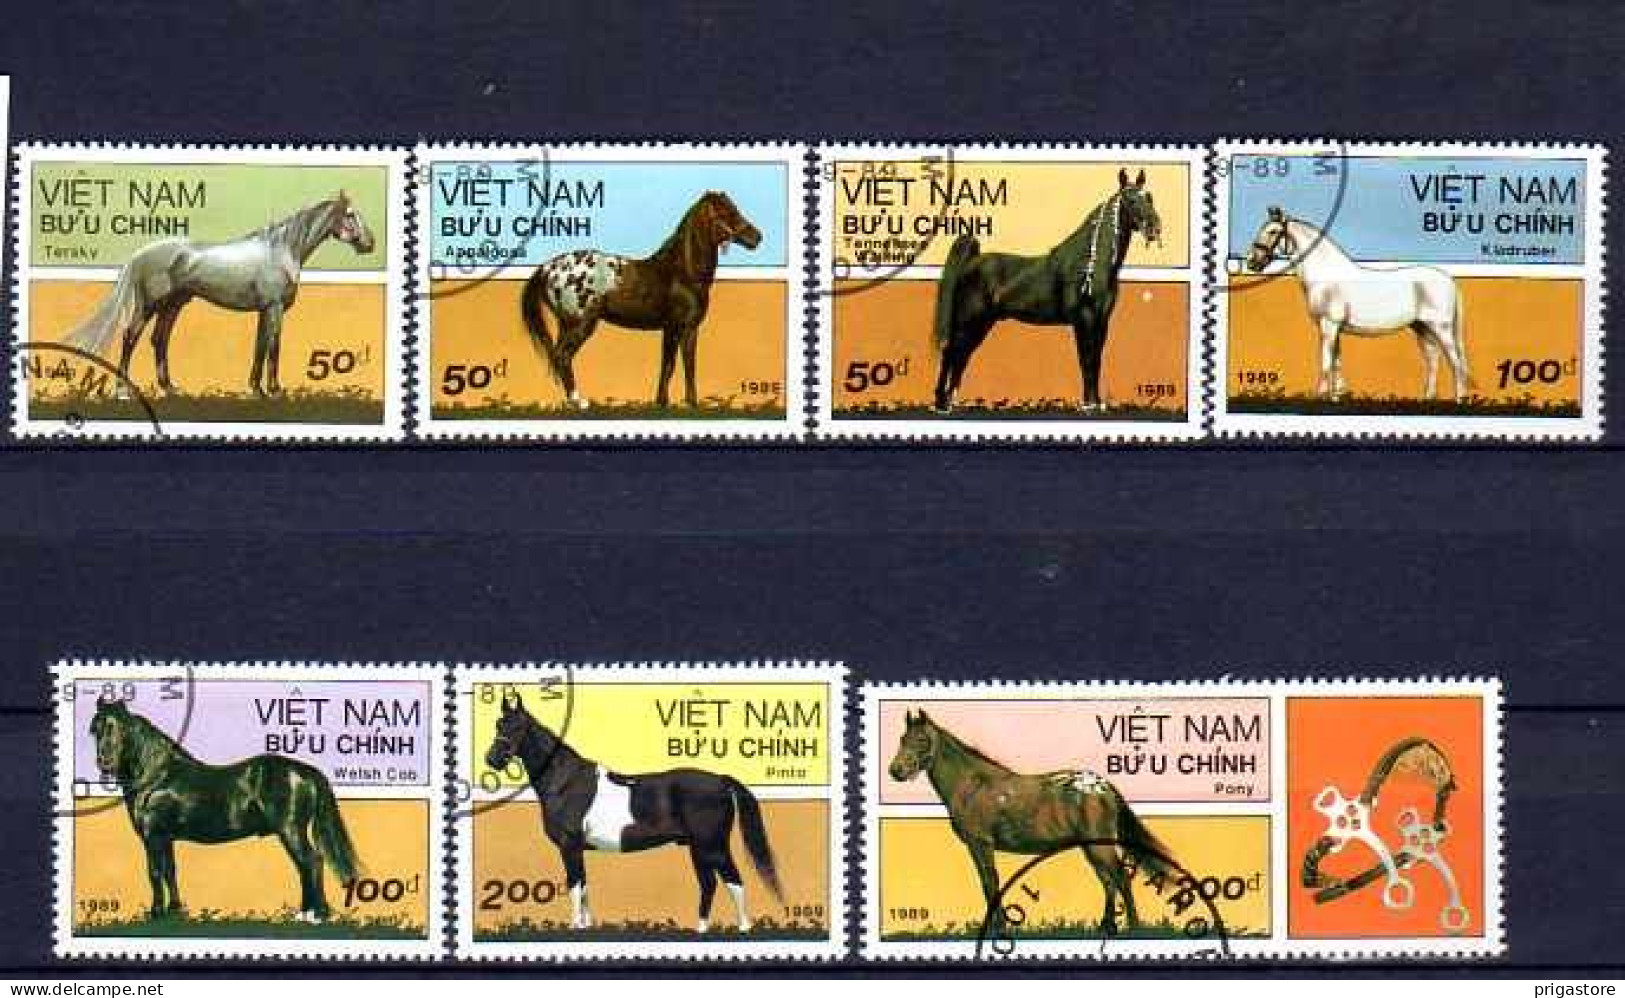 Chevaux Vietnam 1989 (19) Yvert N° 996 à 1002 Oblitéré Used - Horses